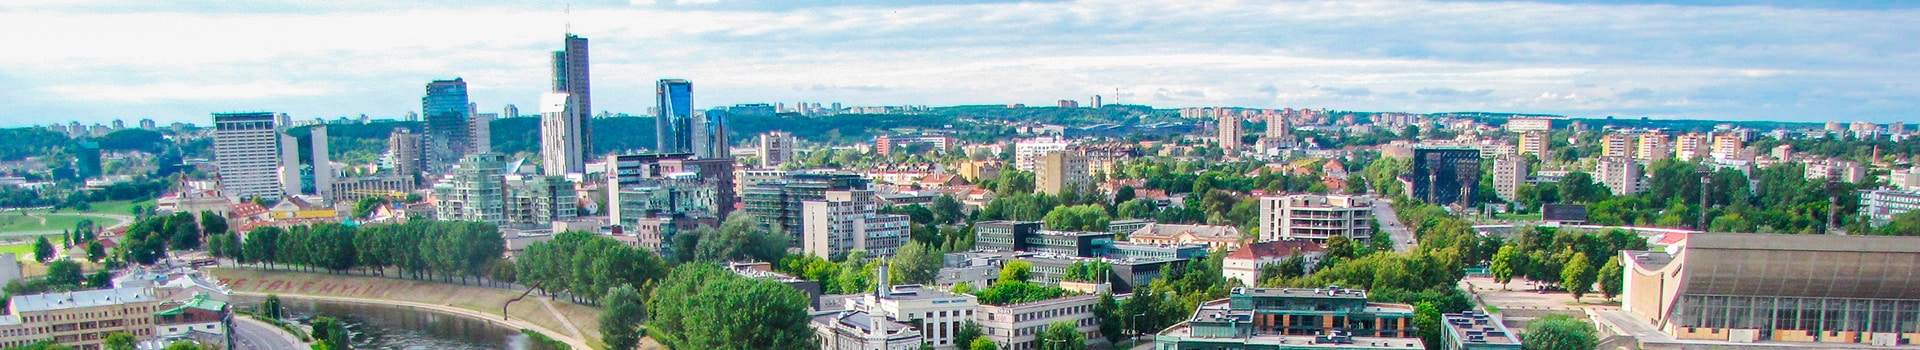 Maiorca - Vilnius